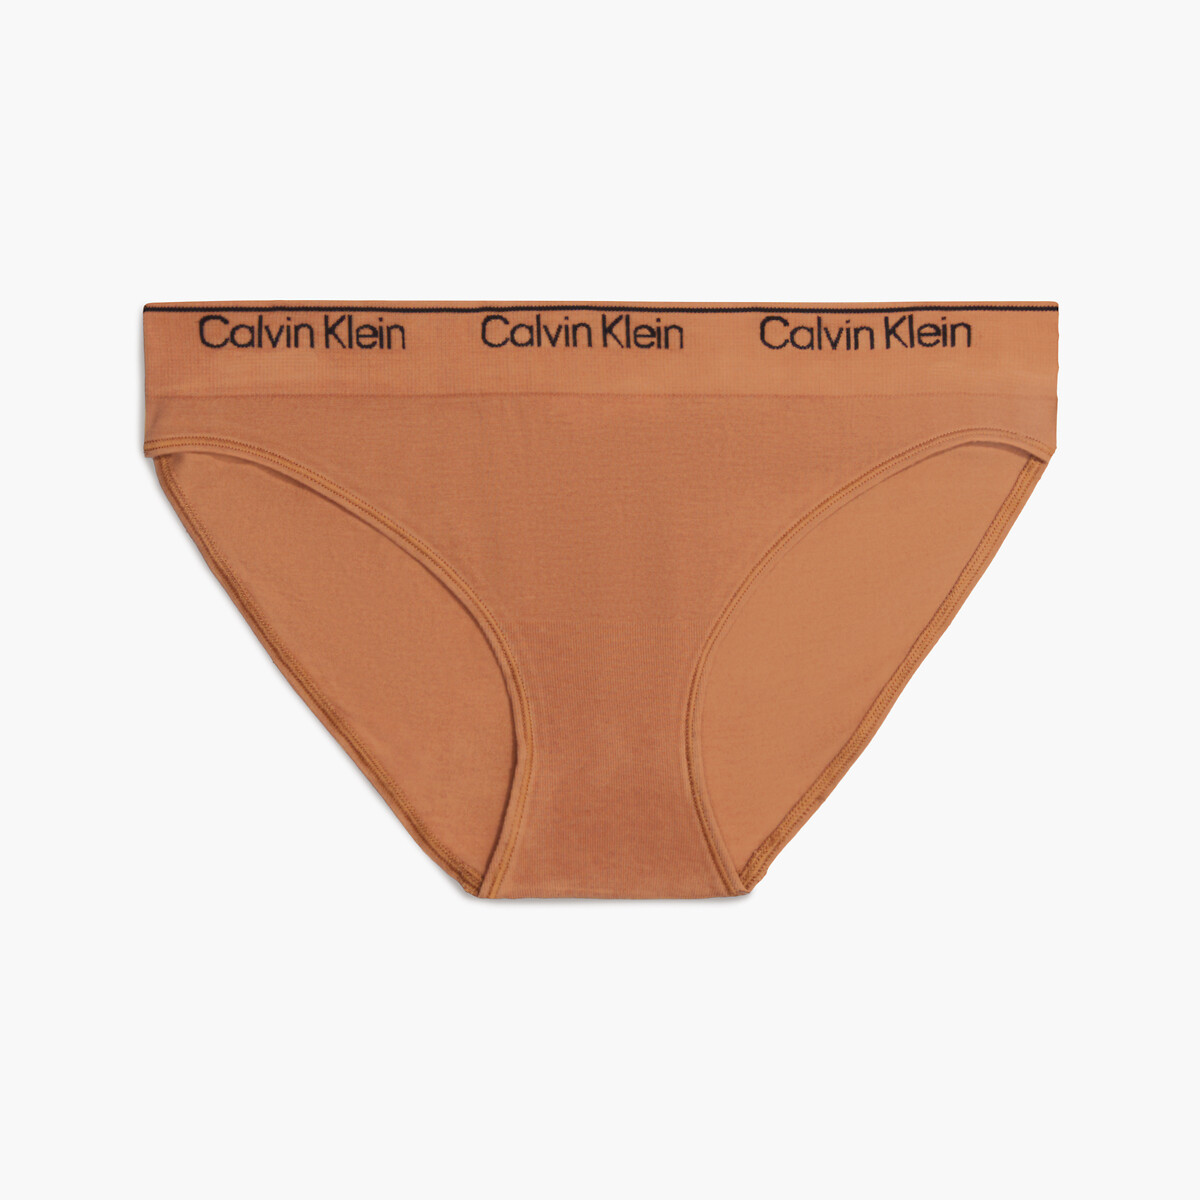 Cuecas modern seamless Calvin Klein Underwear